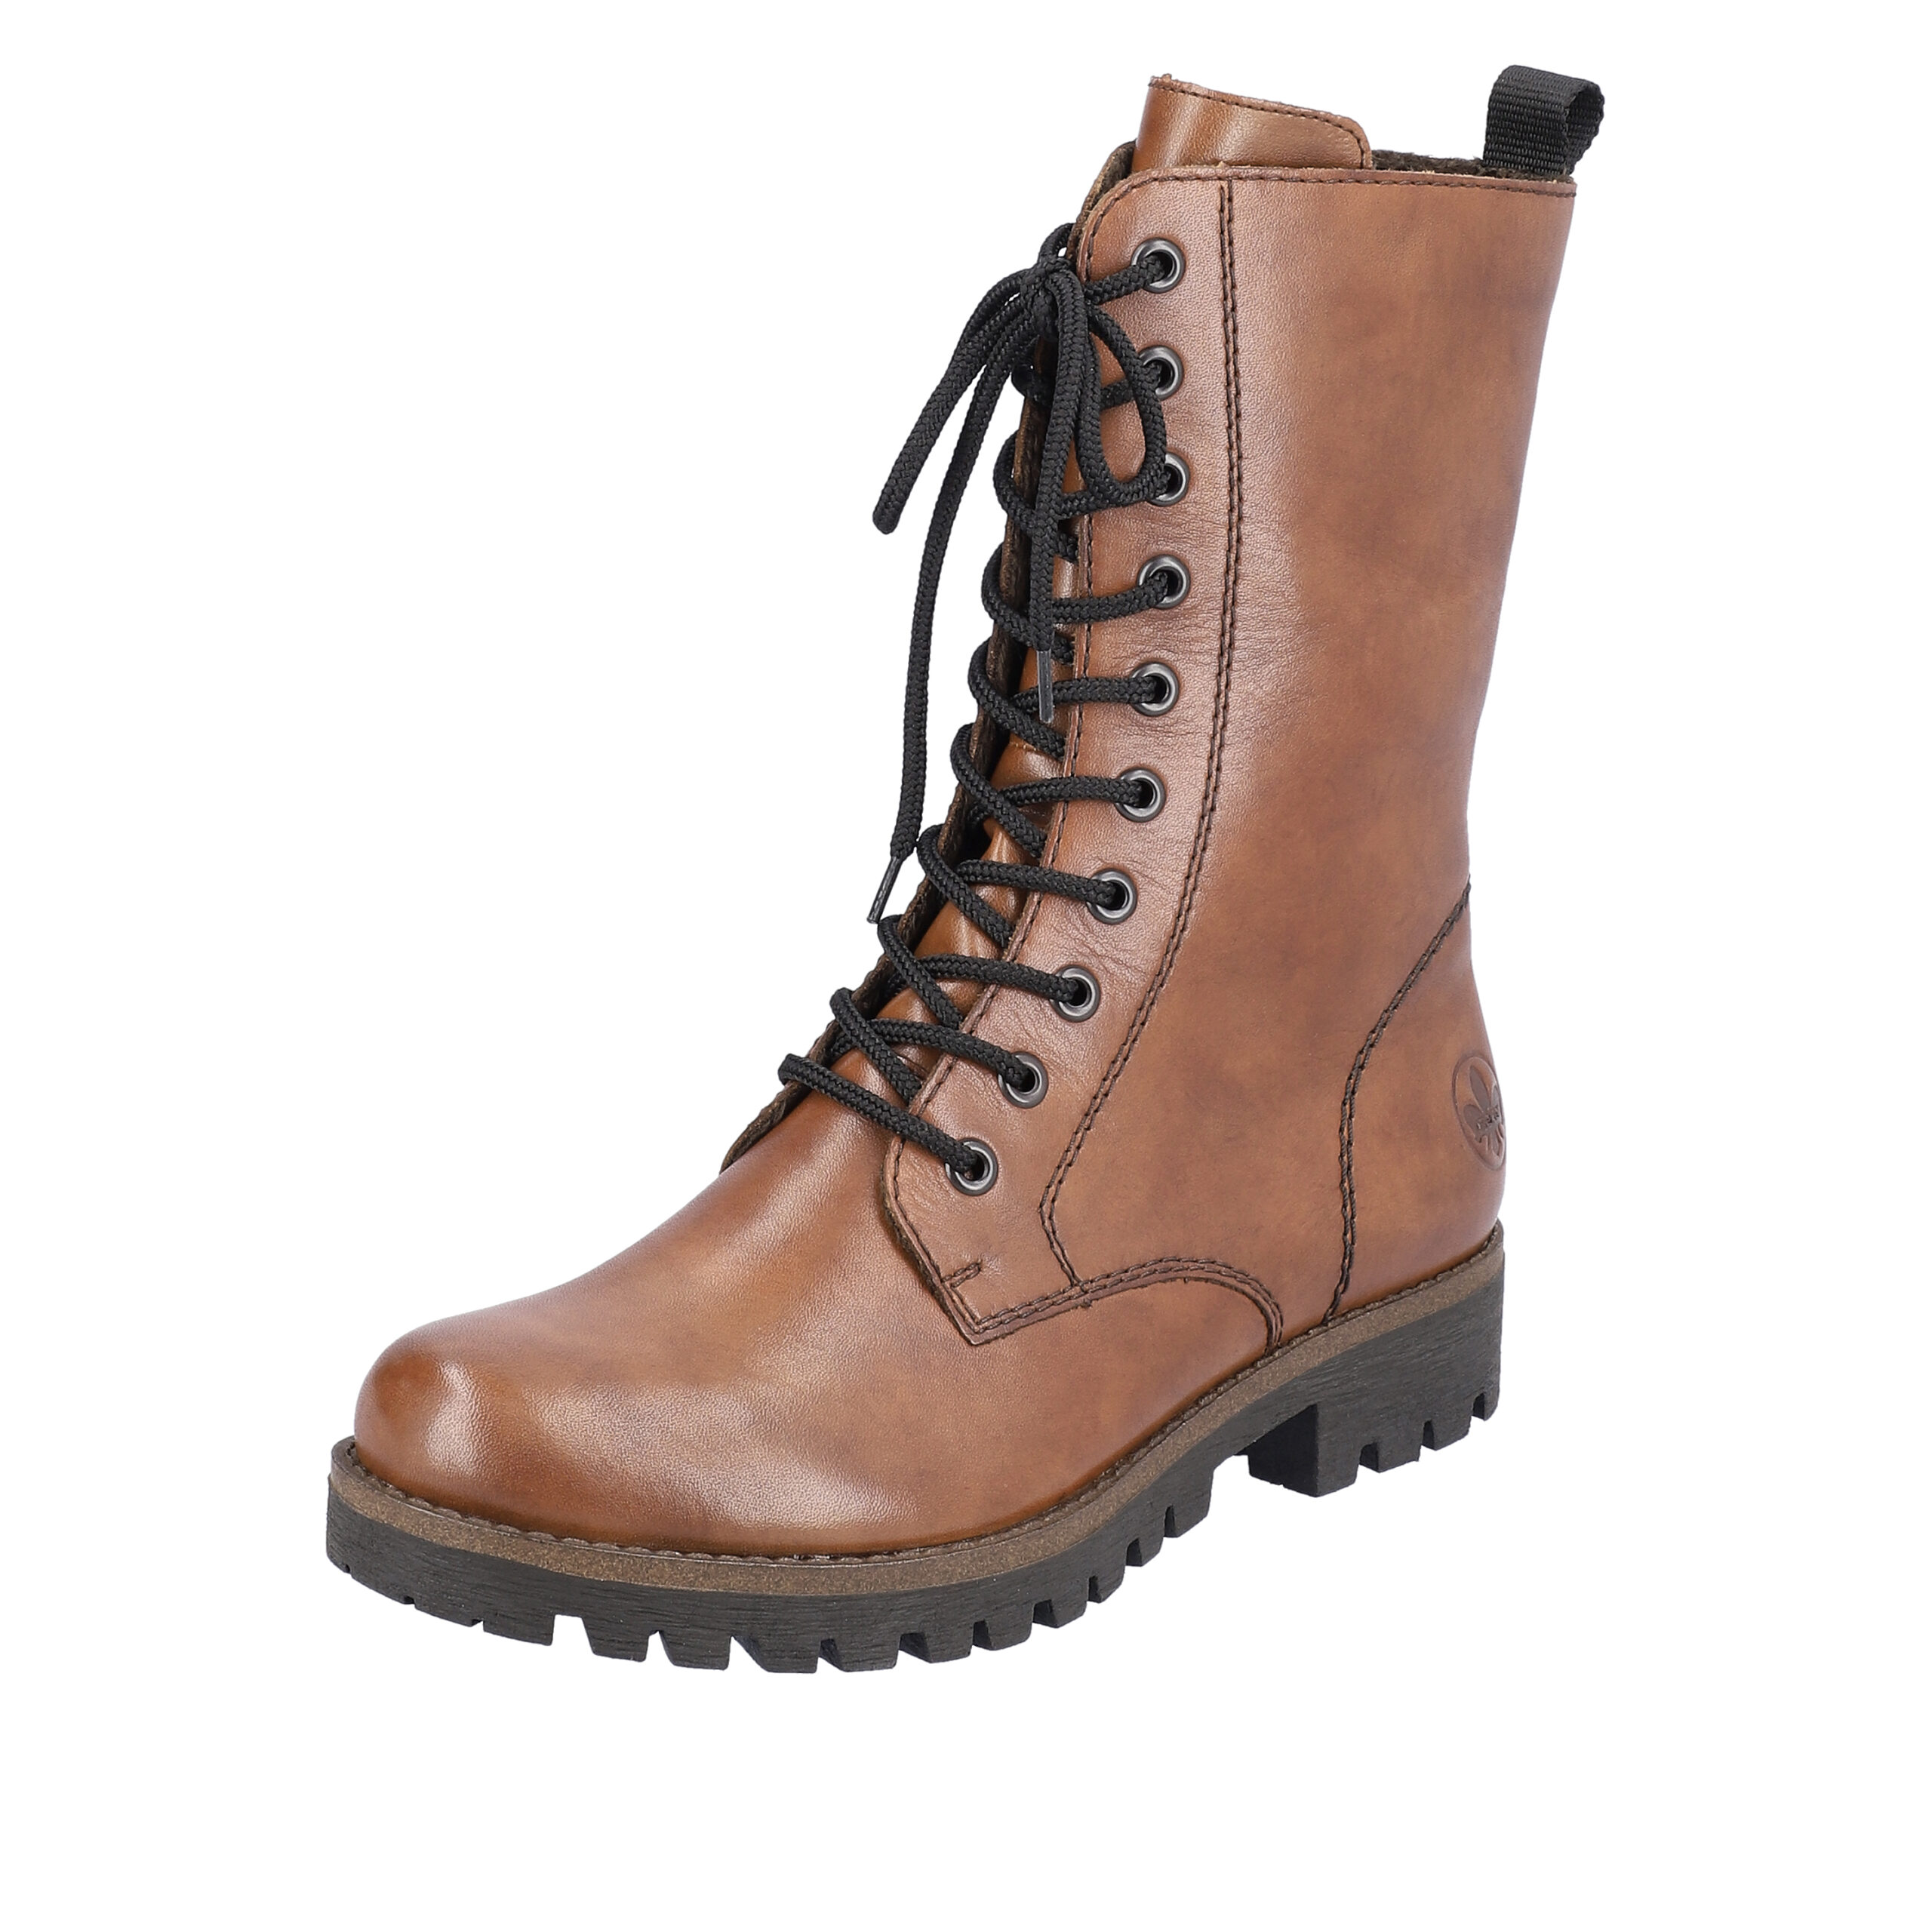 Rieker damestøvle flot brun farve Skind kvalitet |®Rieker-shop.dk